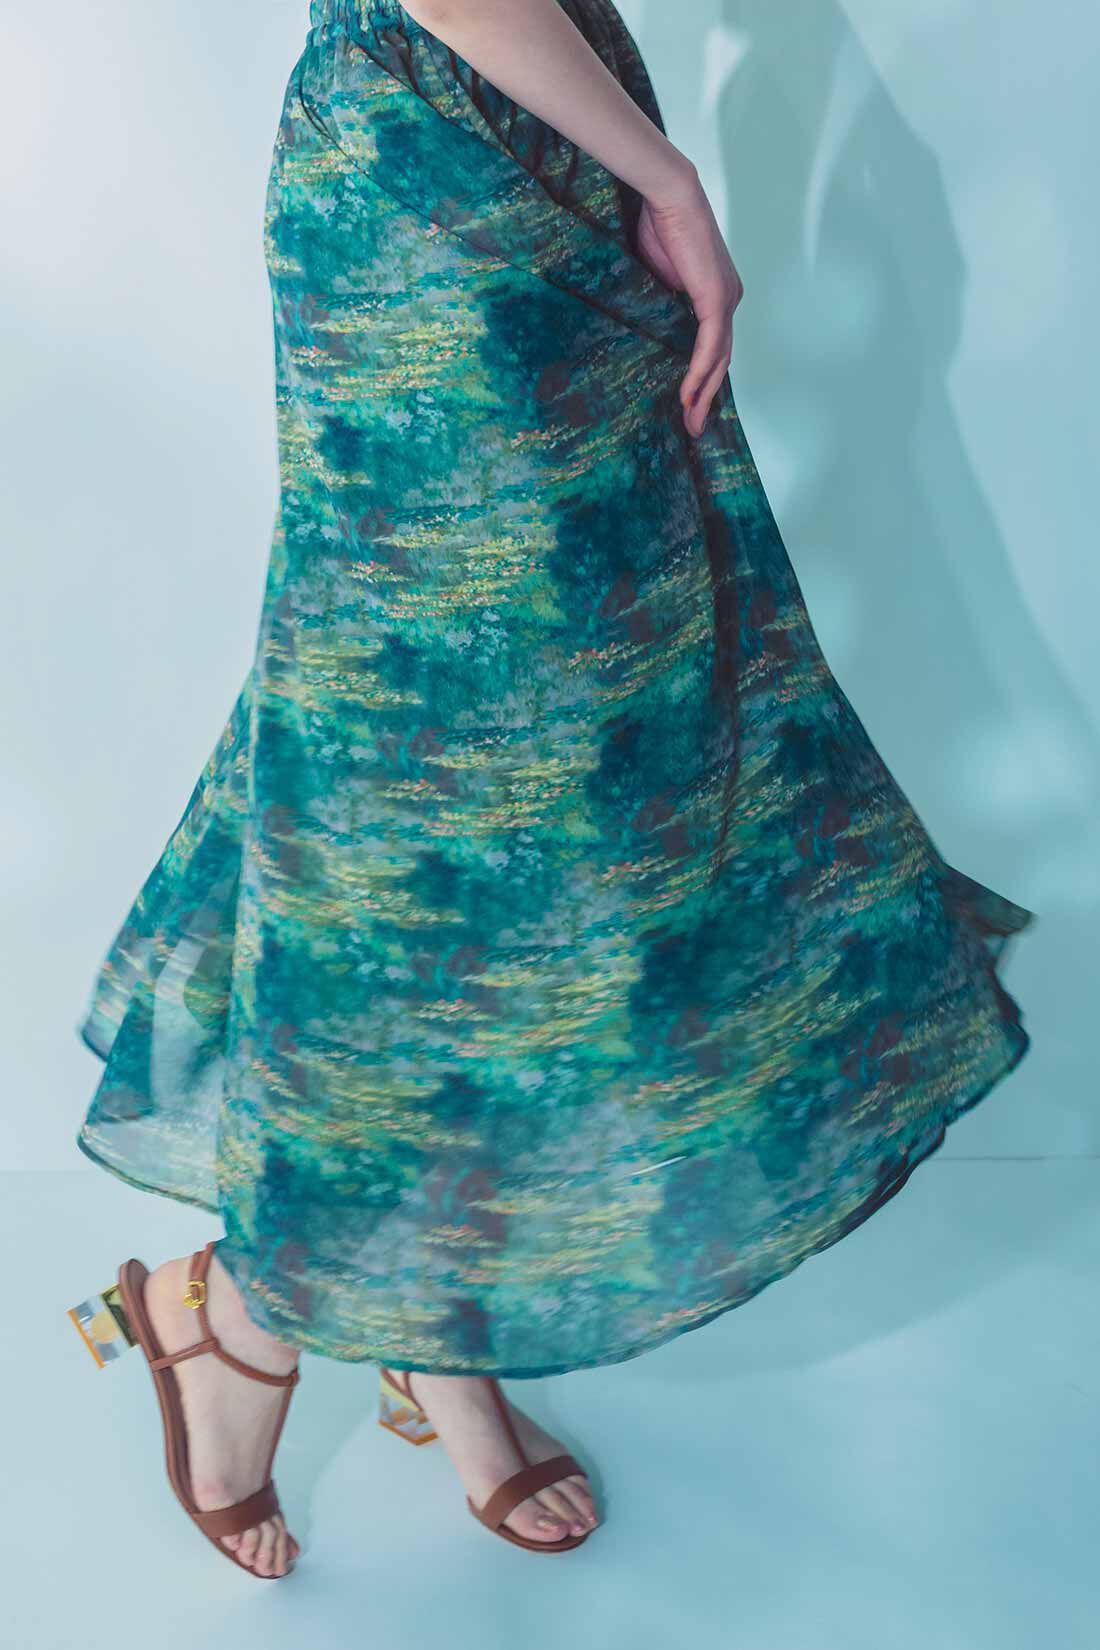 IEDIT[イディット]　モネの睡蓮をまとうシフォンスカート〈ブルー〉|※着用イメージです。お届けするカラーとは異なります。